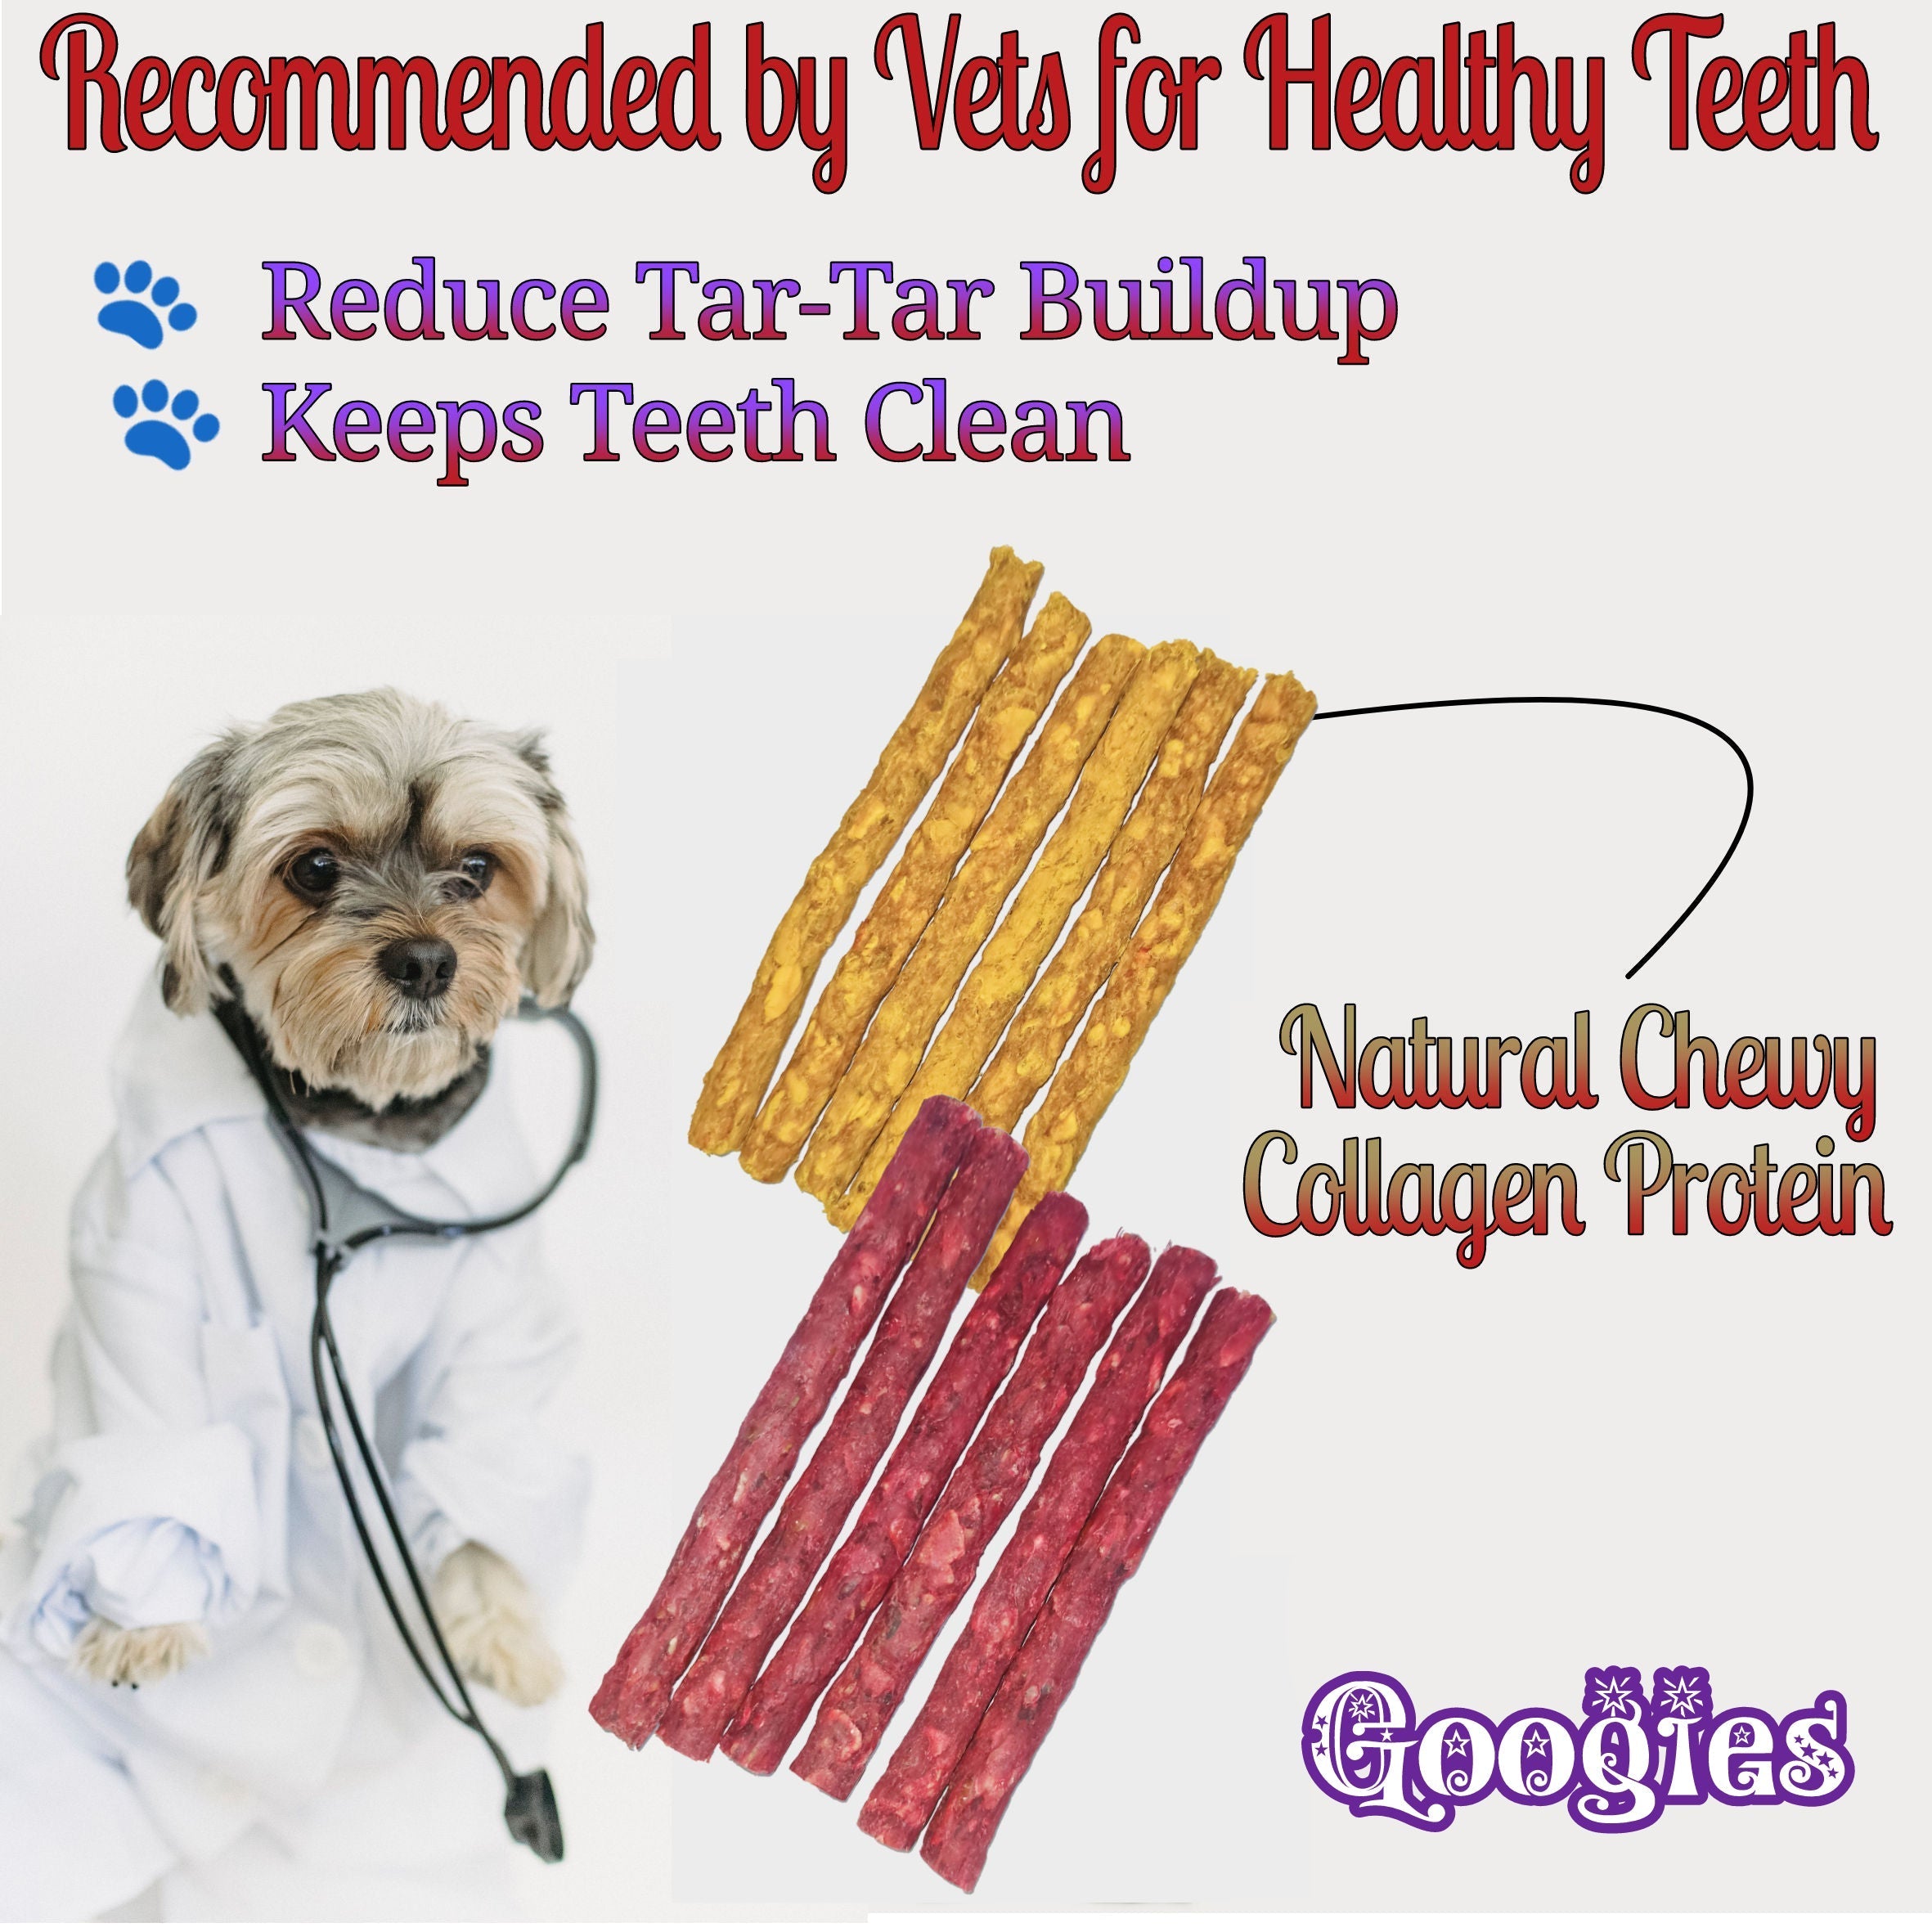 Googies Munchy Sticks Mix pack of 400g Dog Treats